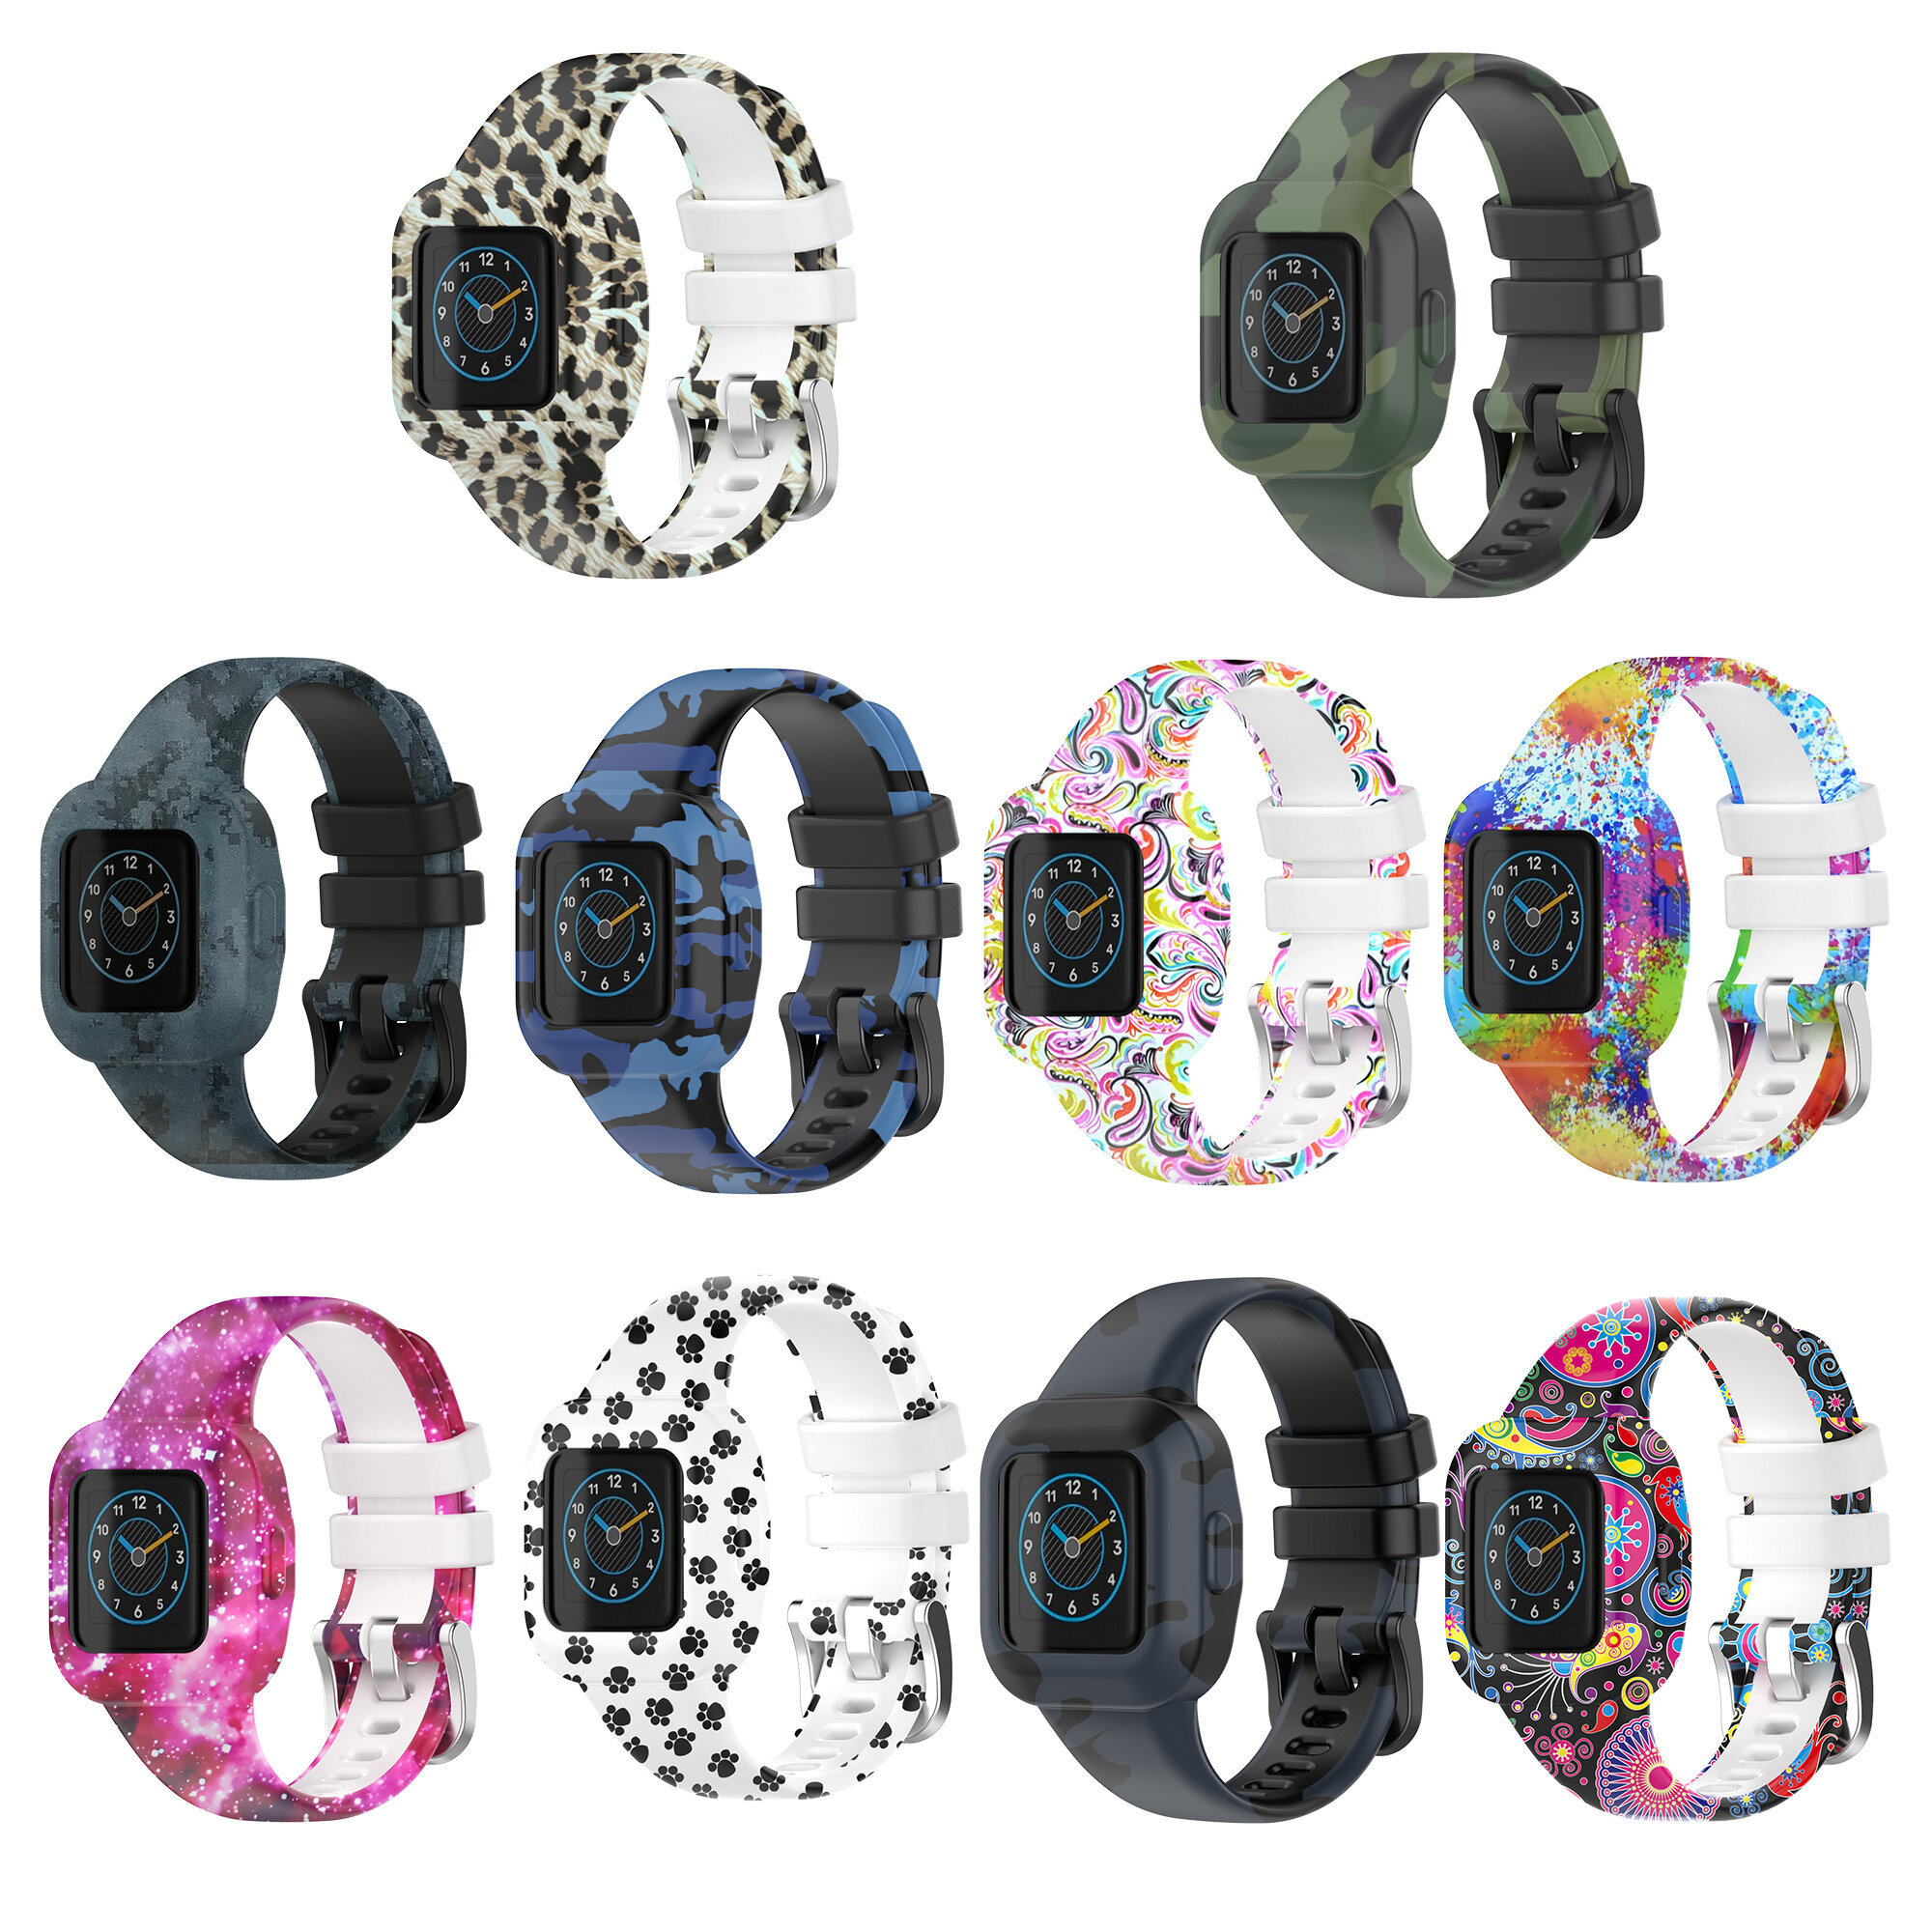 

Bakeey Colorful Half-pack Силиконовый Детские Смарт-часы со сменным ремешком Стандарты для Garmin Fit JR3 / Vivofit JR3